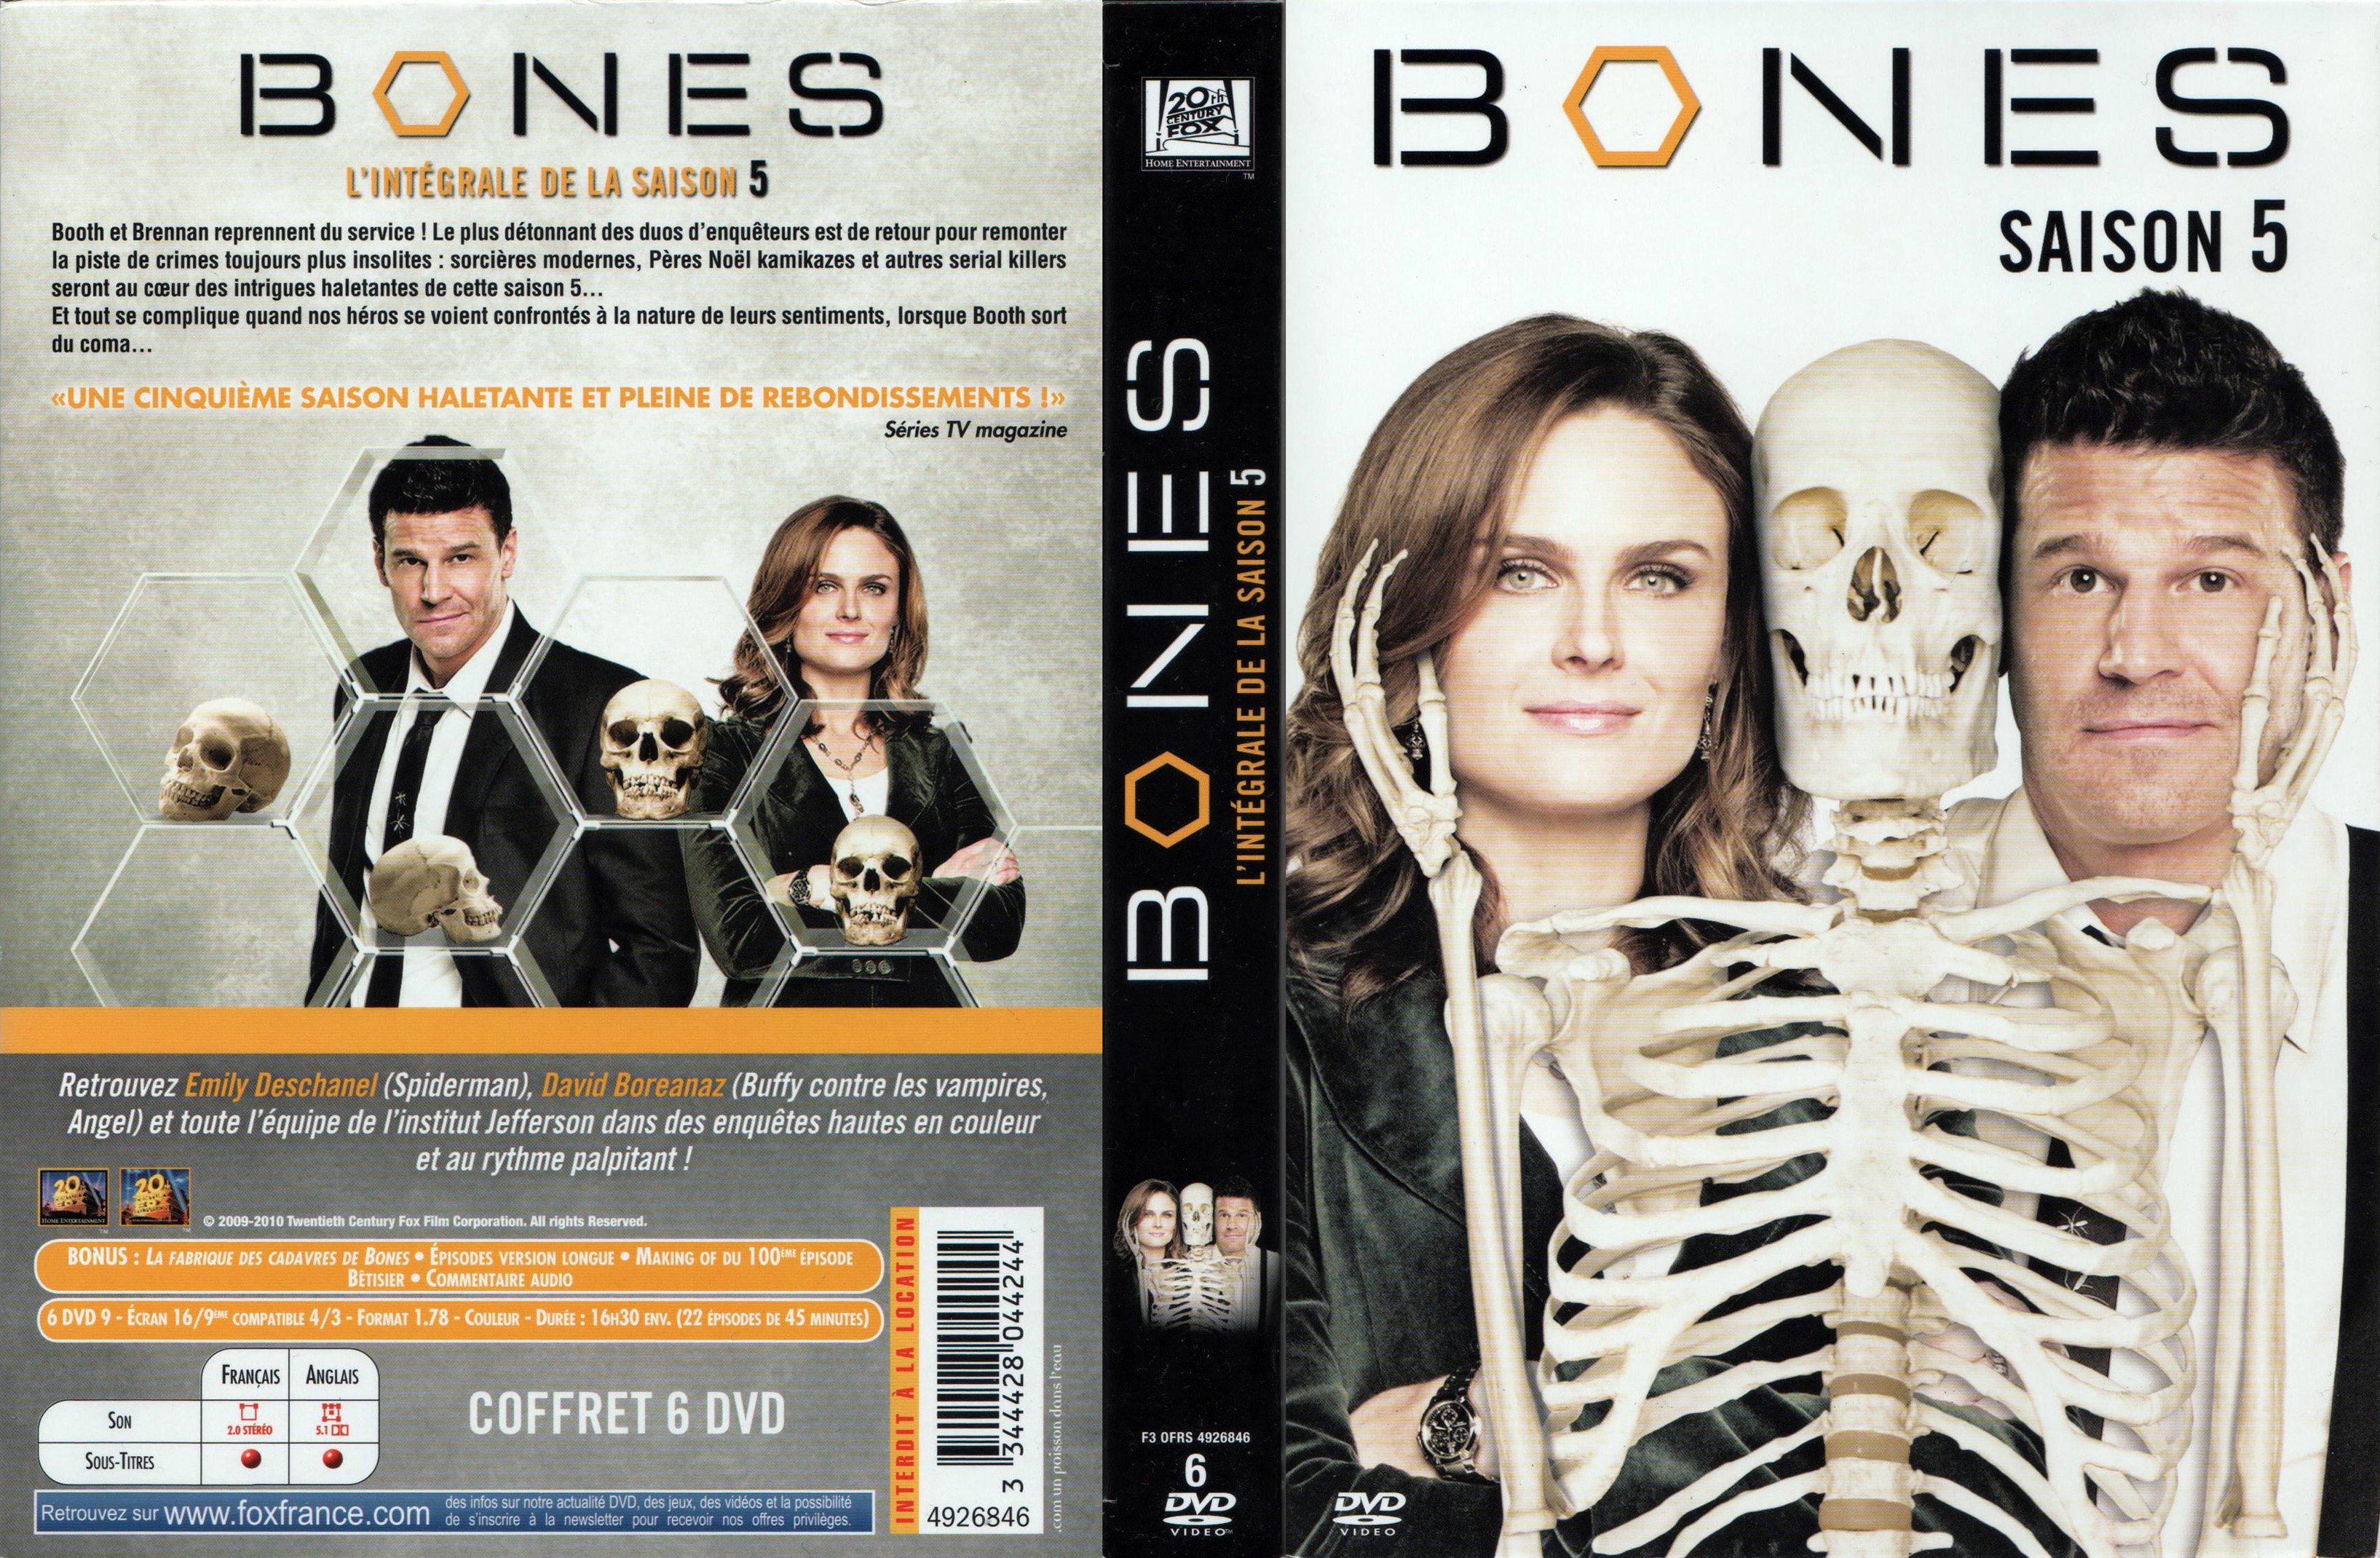 Jaquette DVD Bones Saison 5 COFFRET